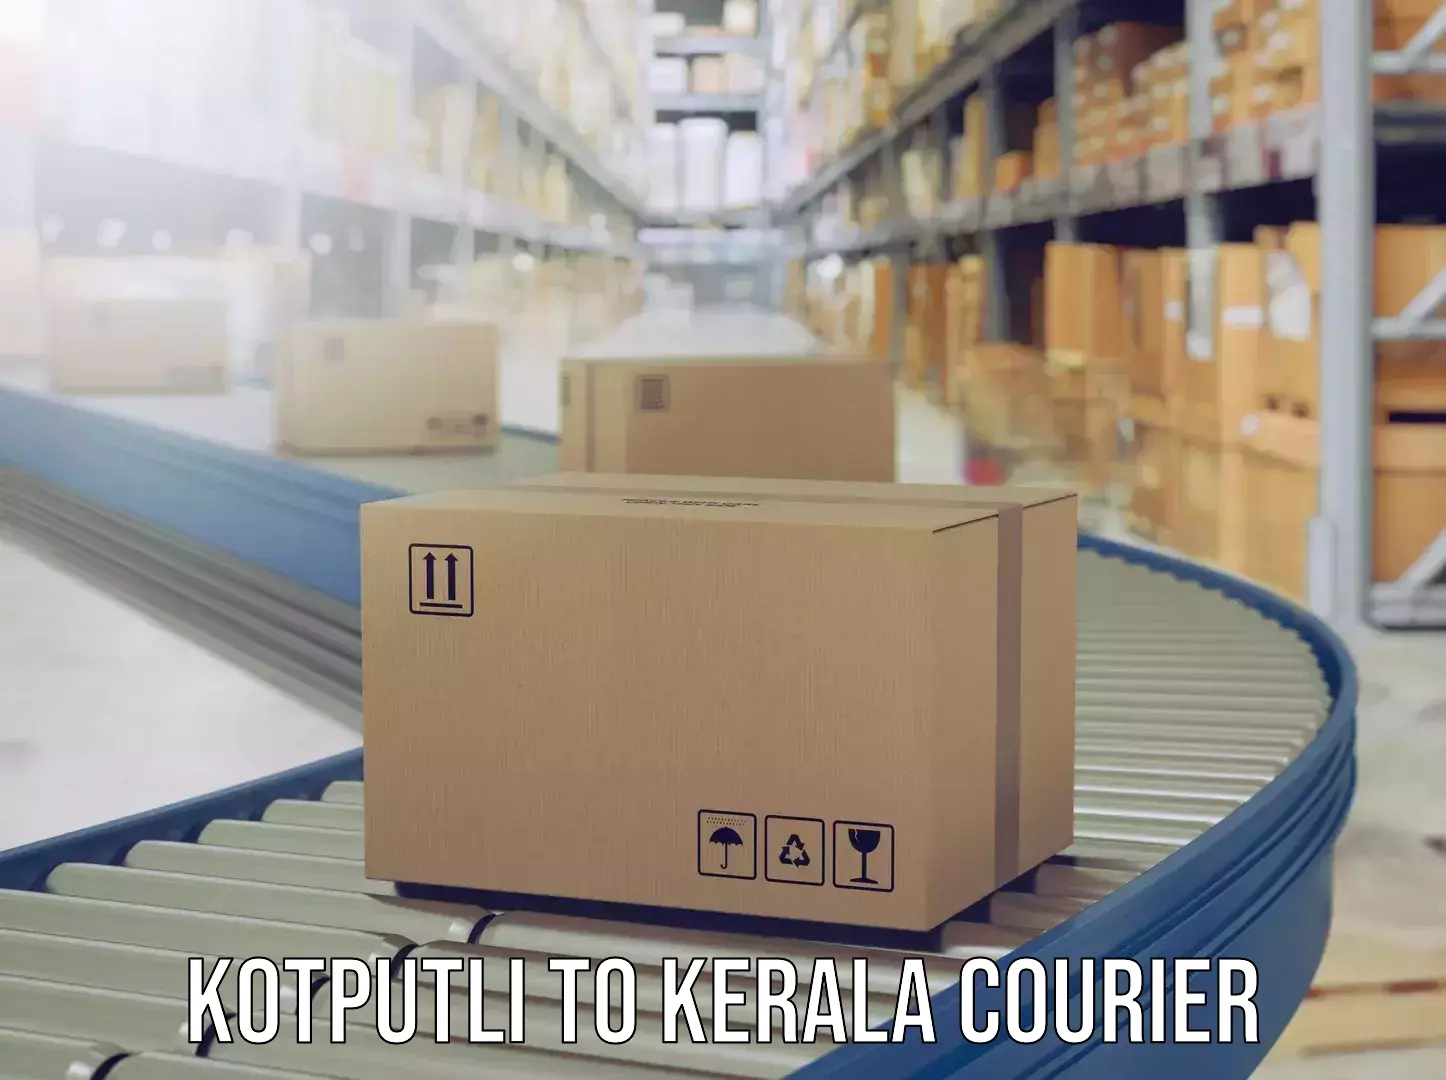 Express baggage shipping in Kotputli to Kerala